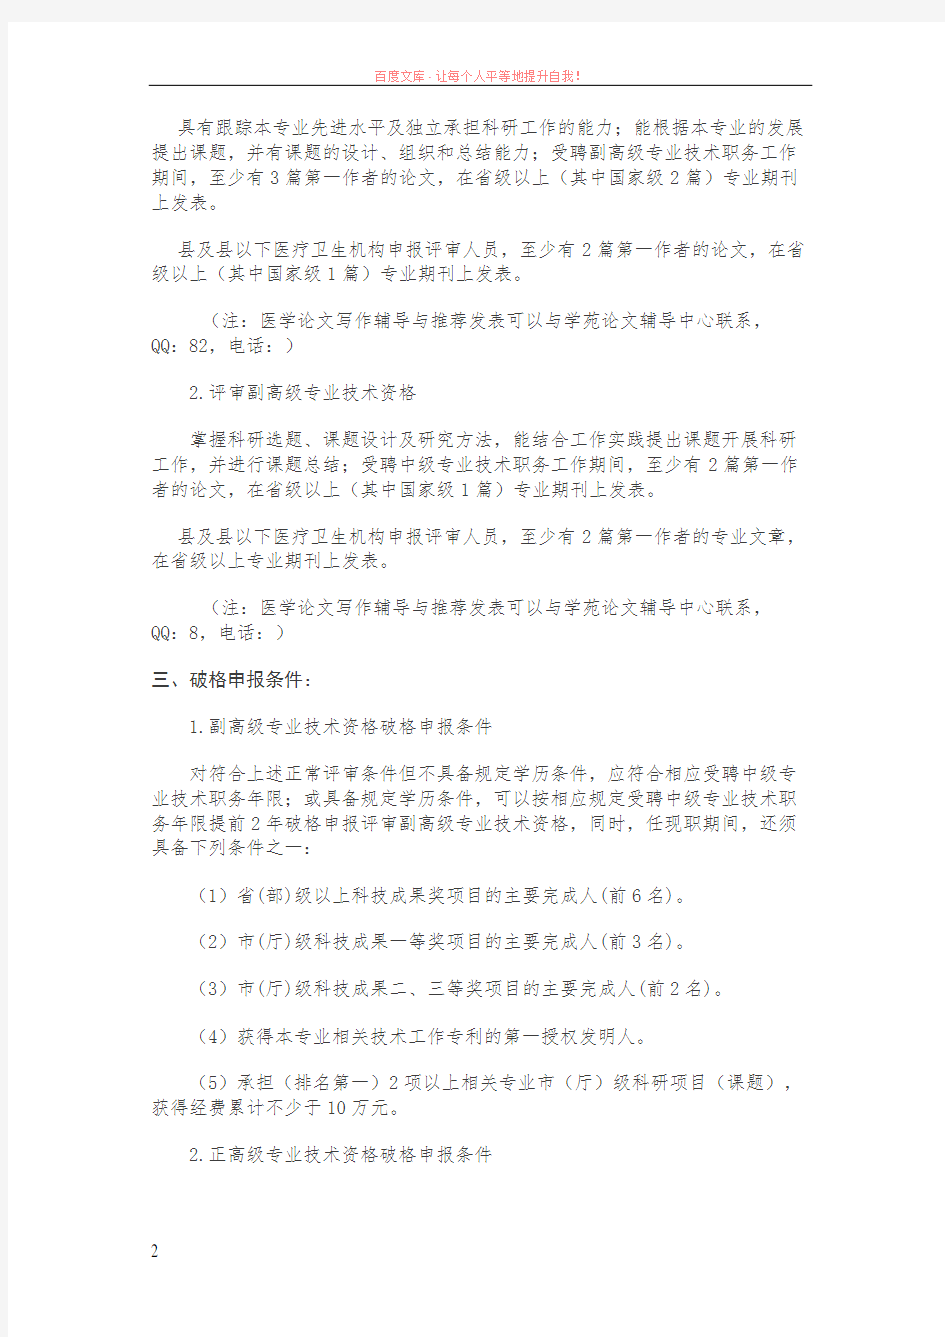 2019年吉林省卫生系列高级职称(副主任医师副主任护师等)申报评审评定政策